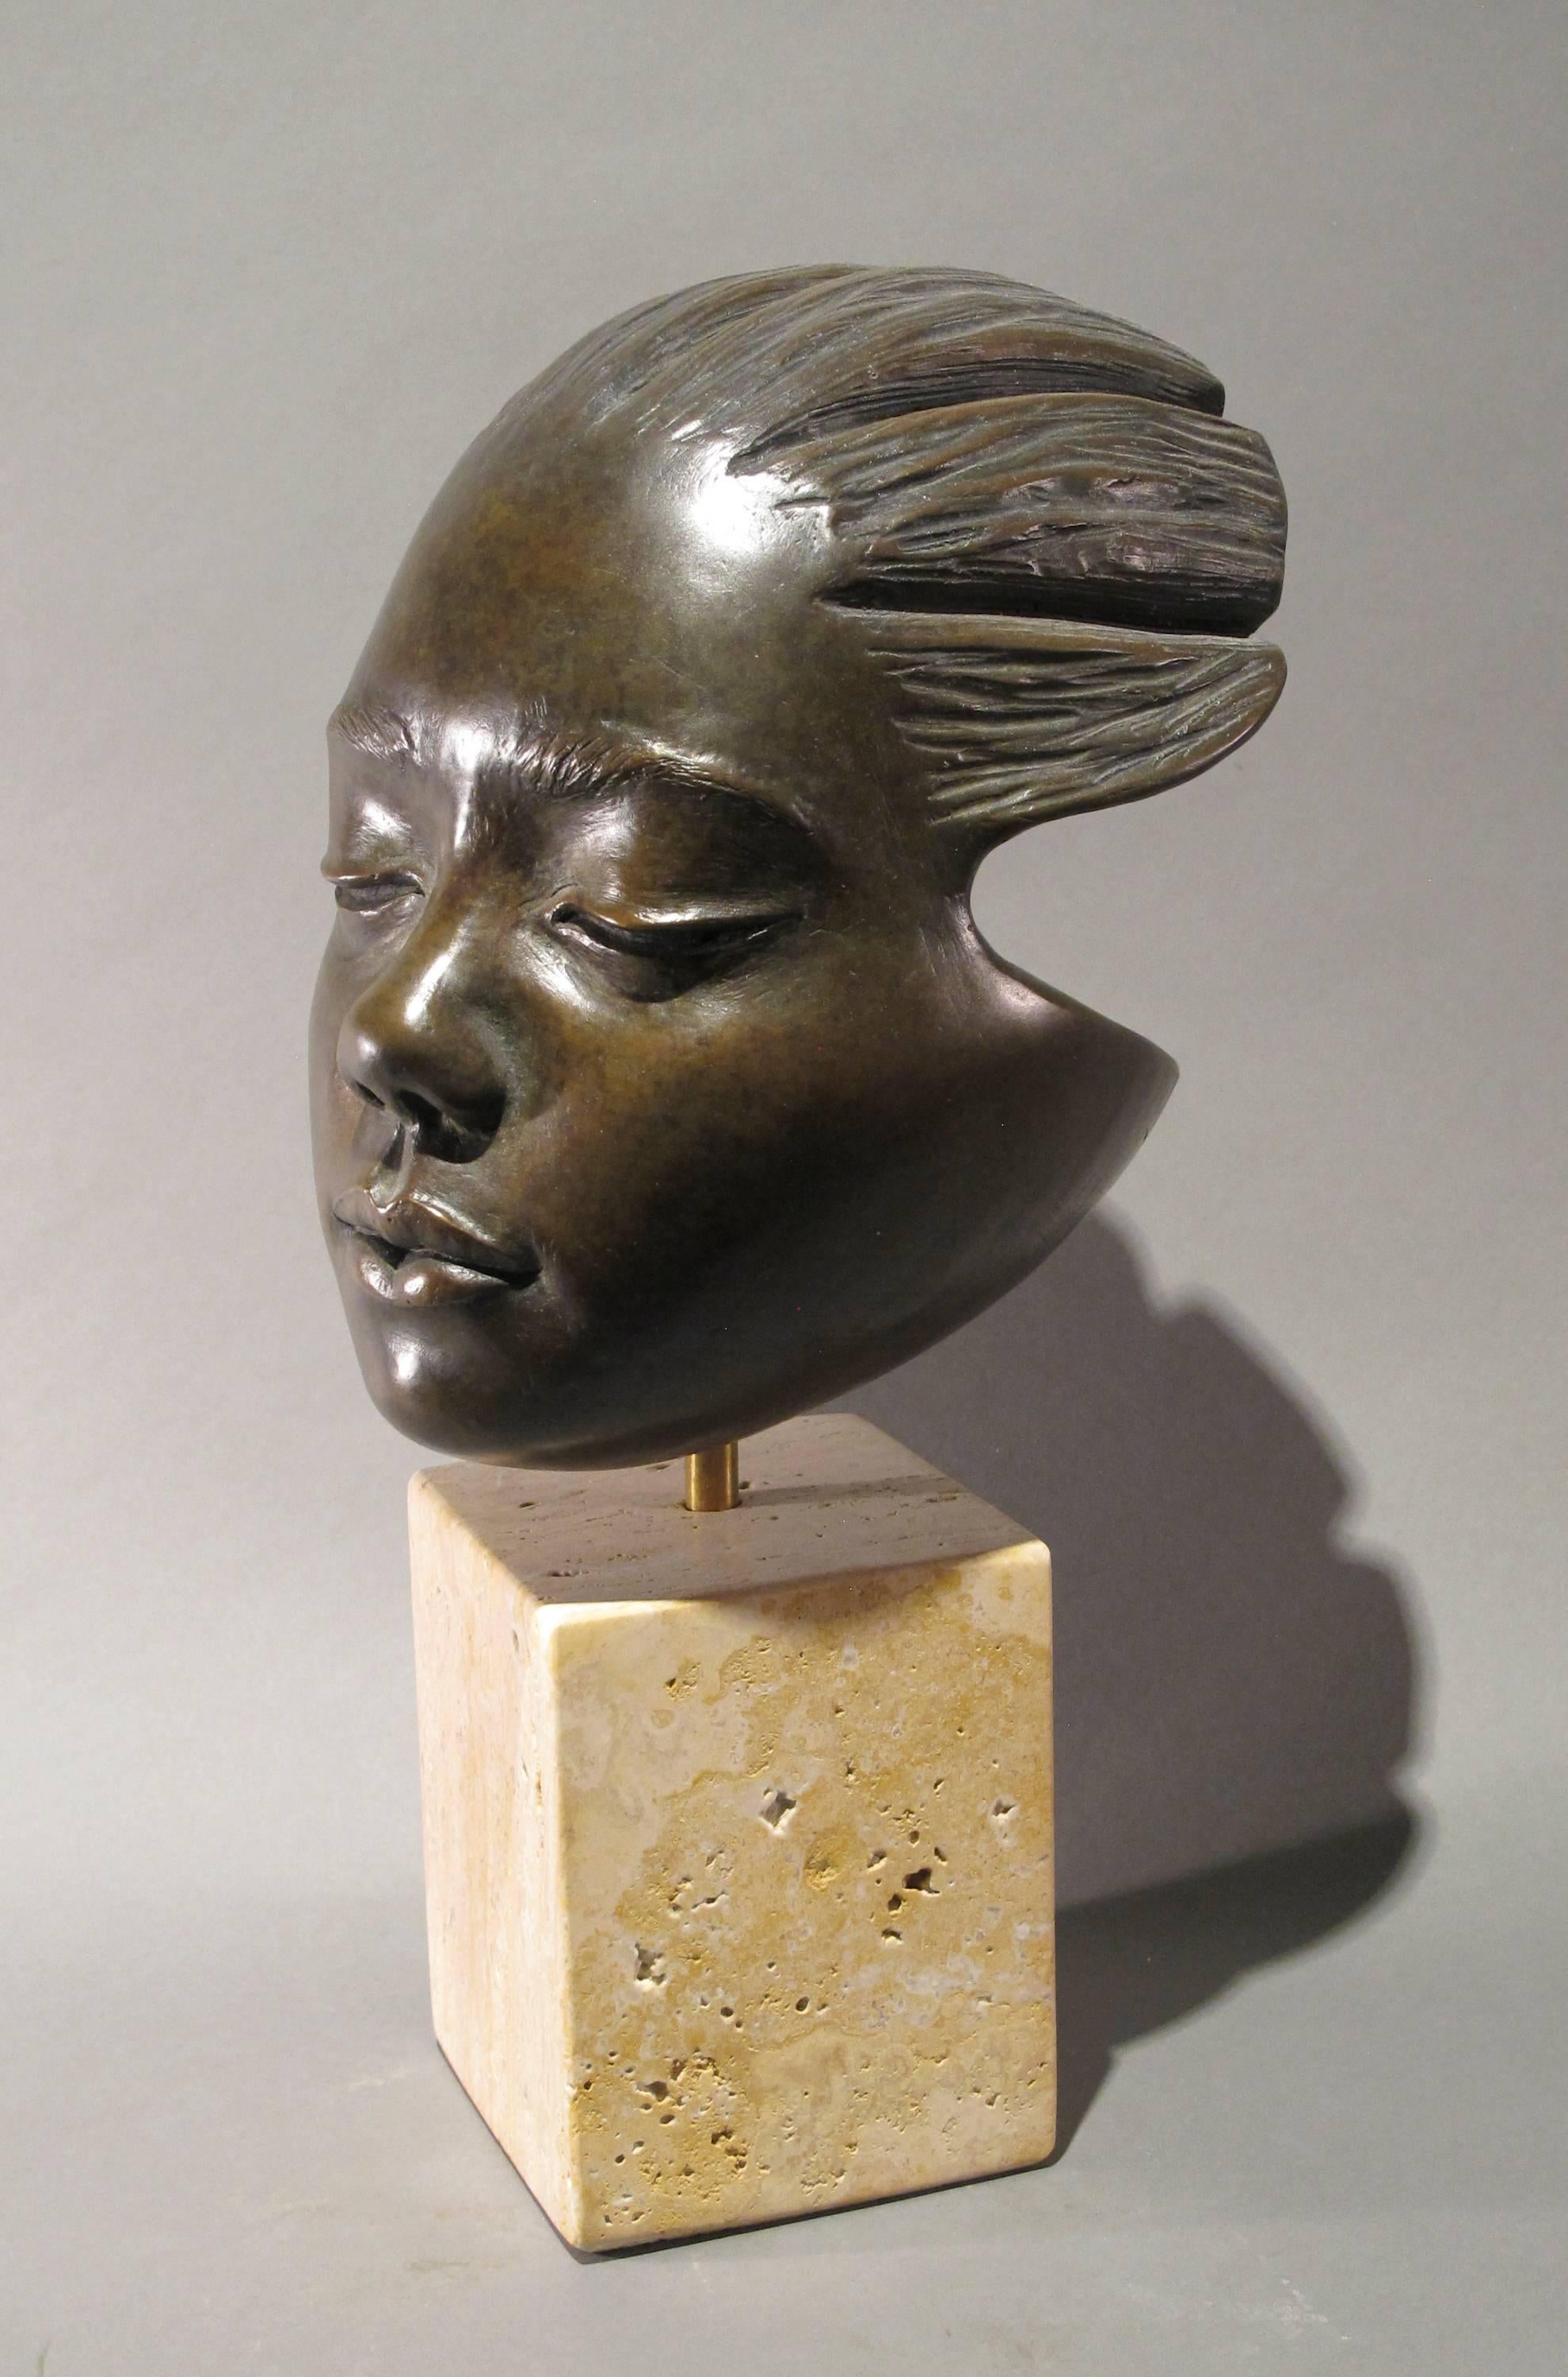 Troy Williams Figurative Sculpture - Listen